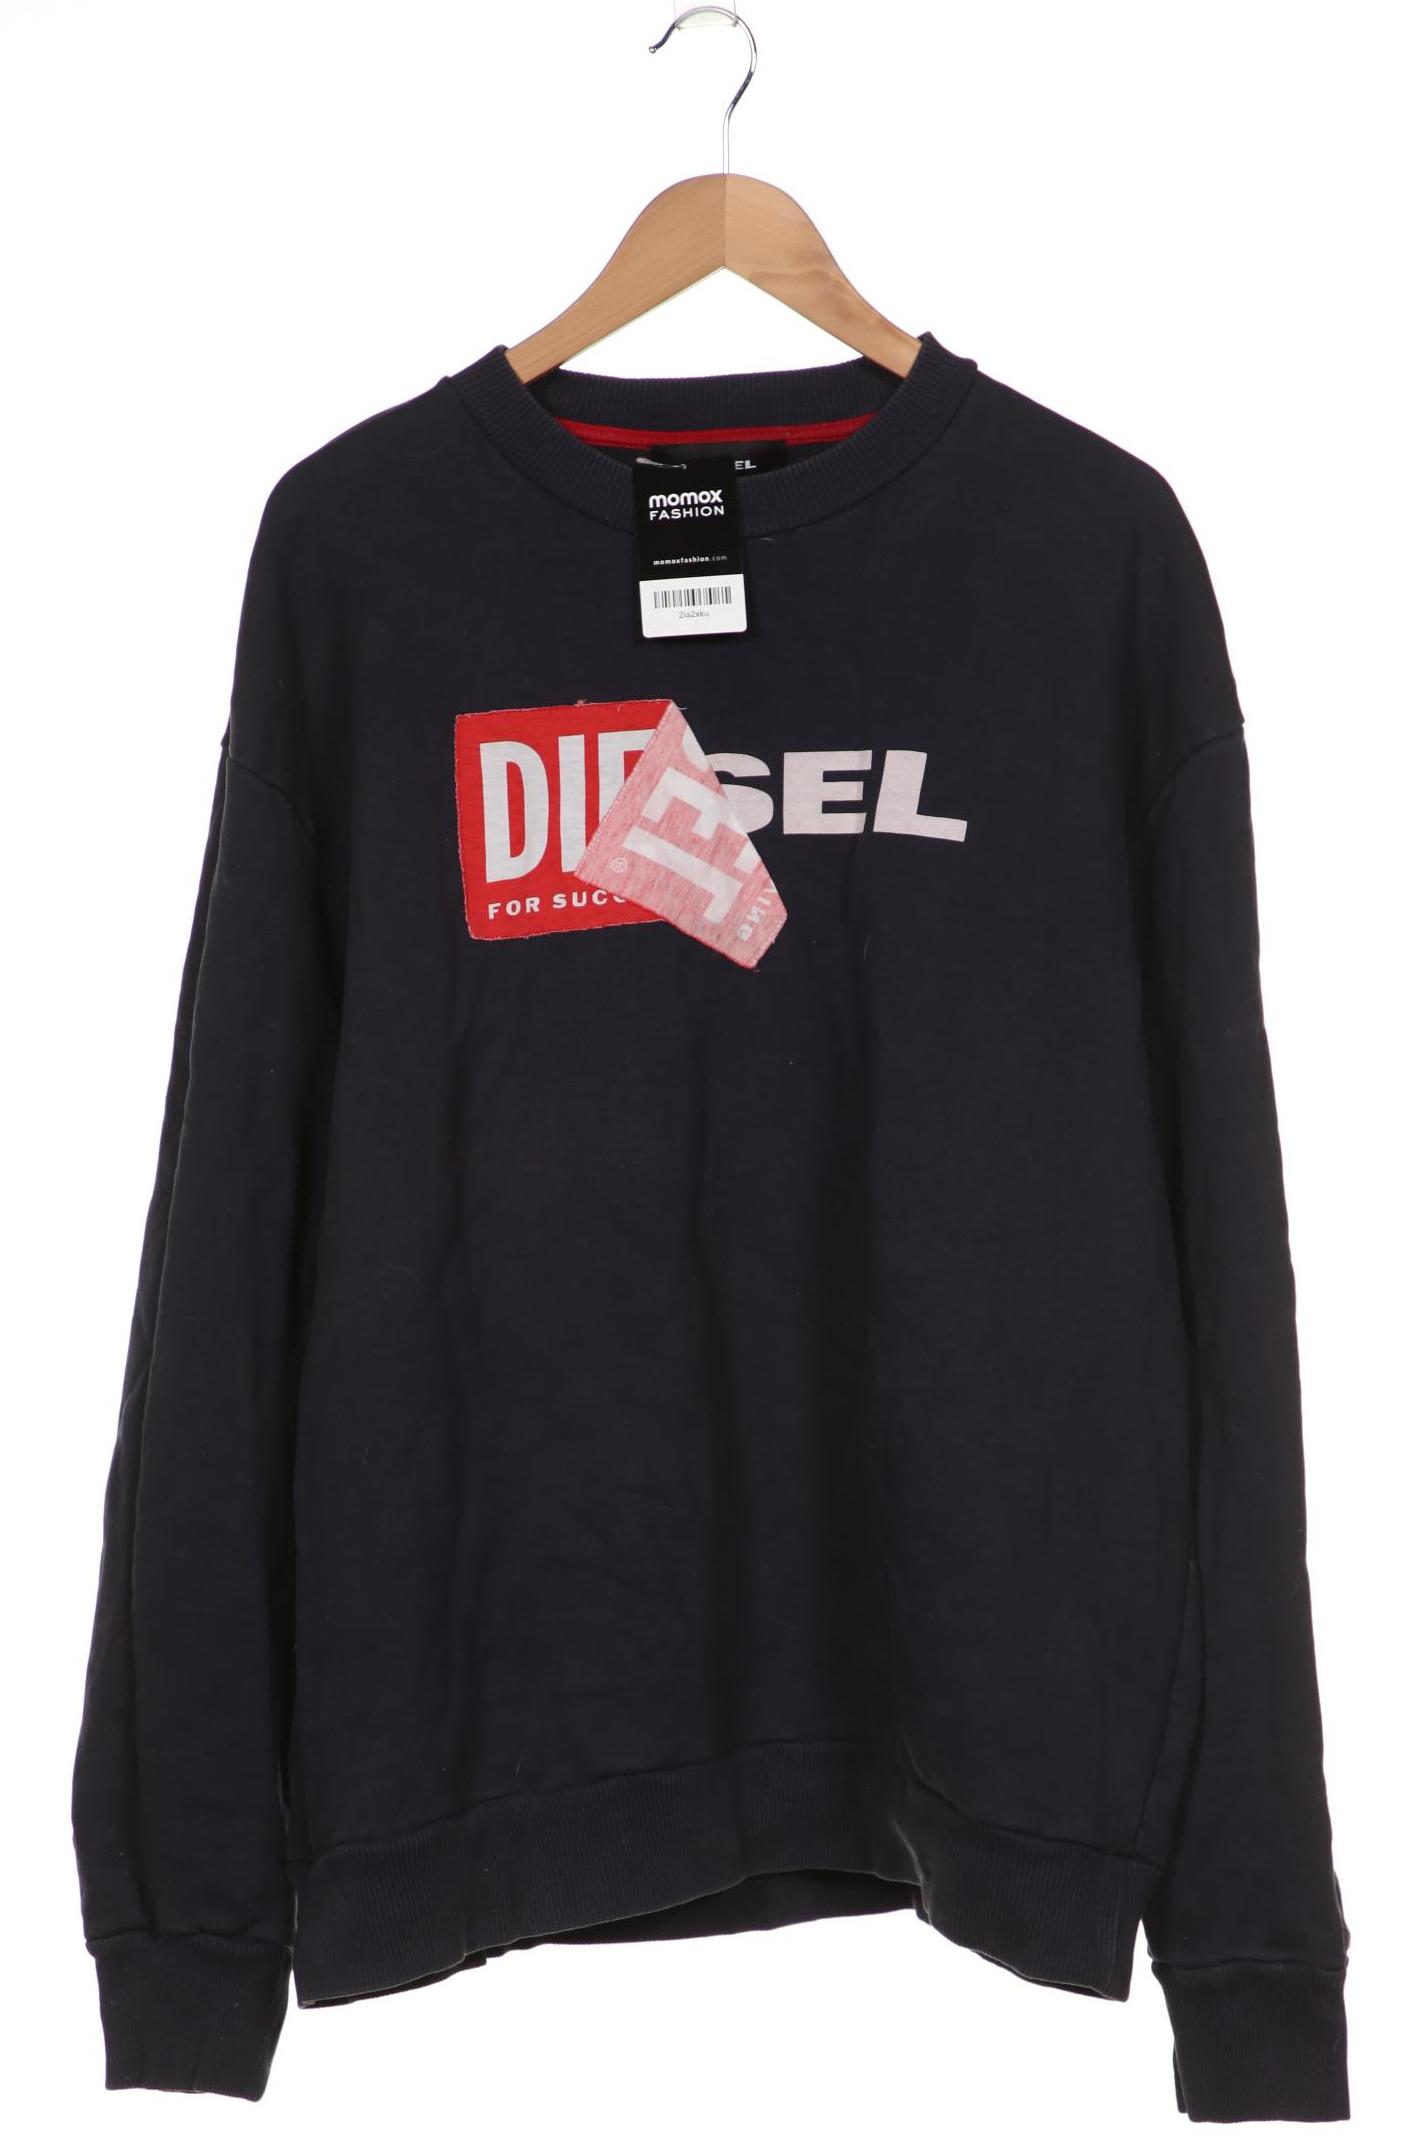 Diesel Herren Sweatshirt, marineblau von Diesel